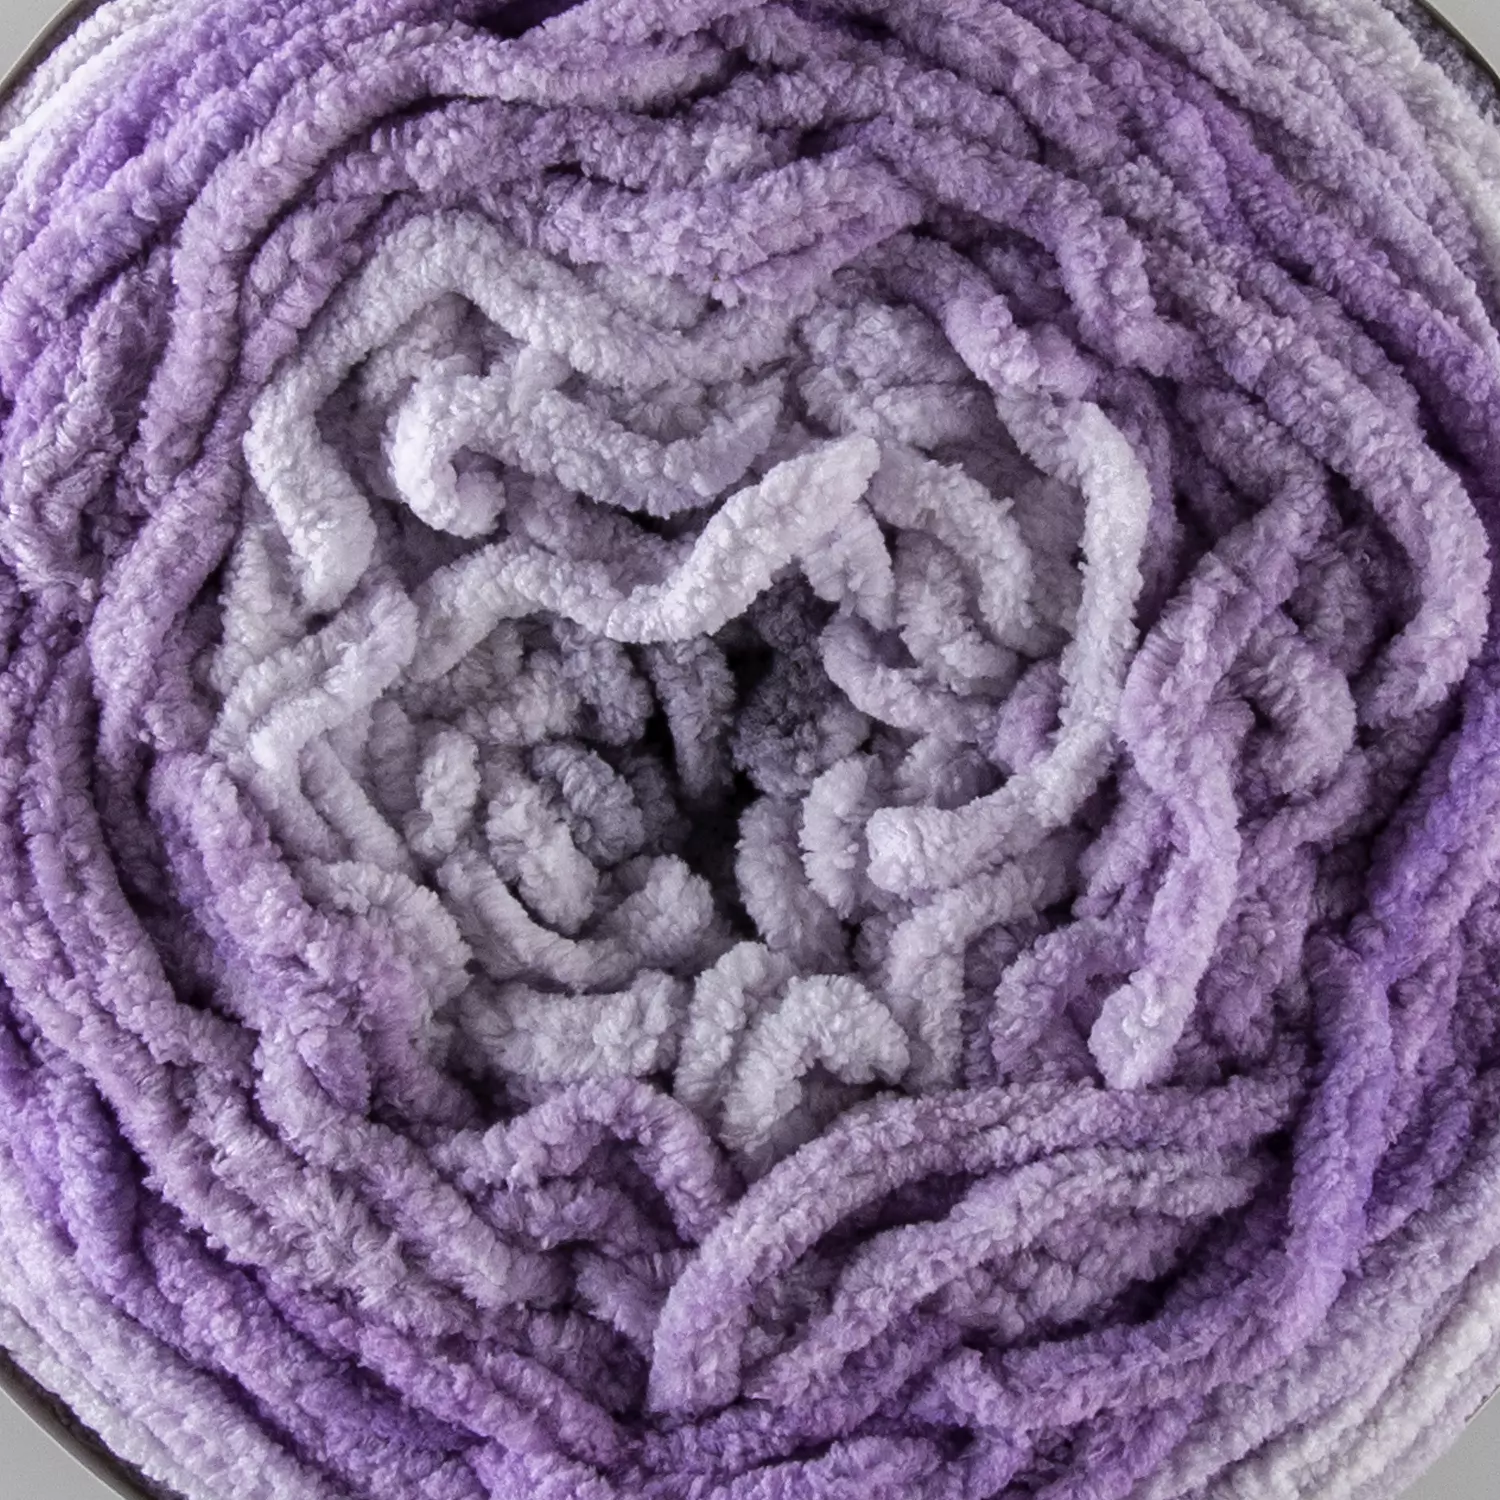 Bernat Blanket Ombre Yarn-Purple Ombre